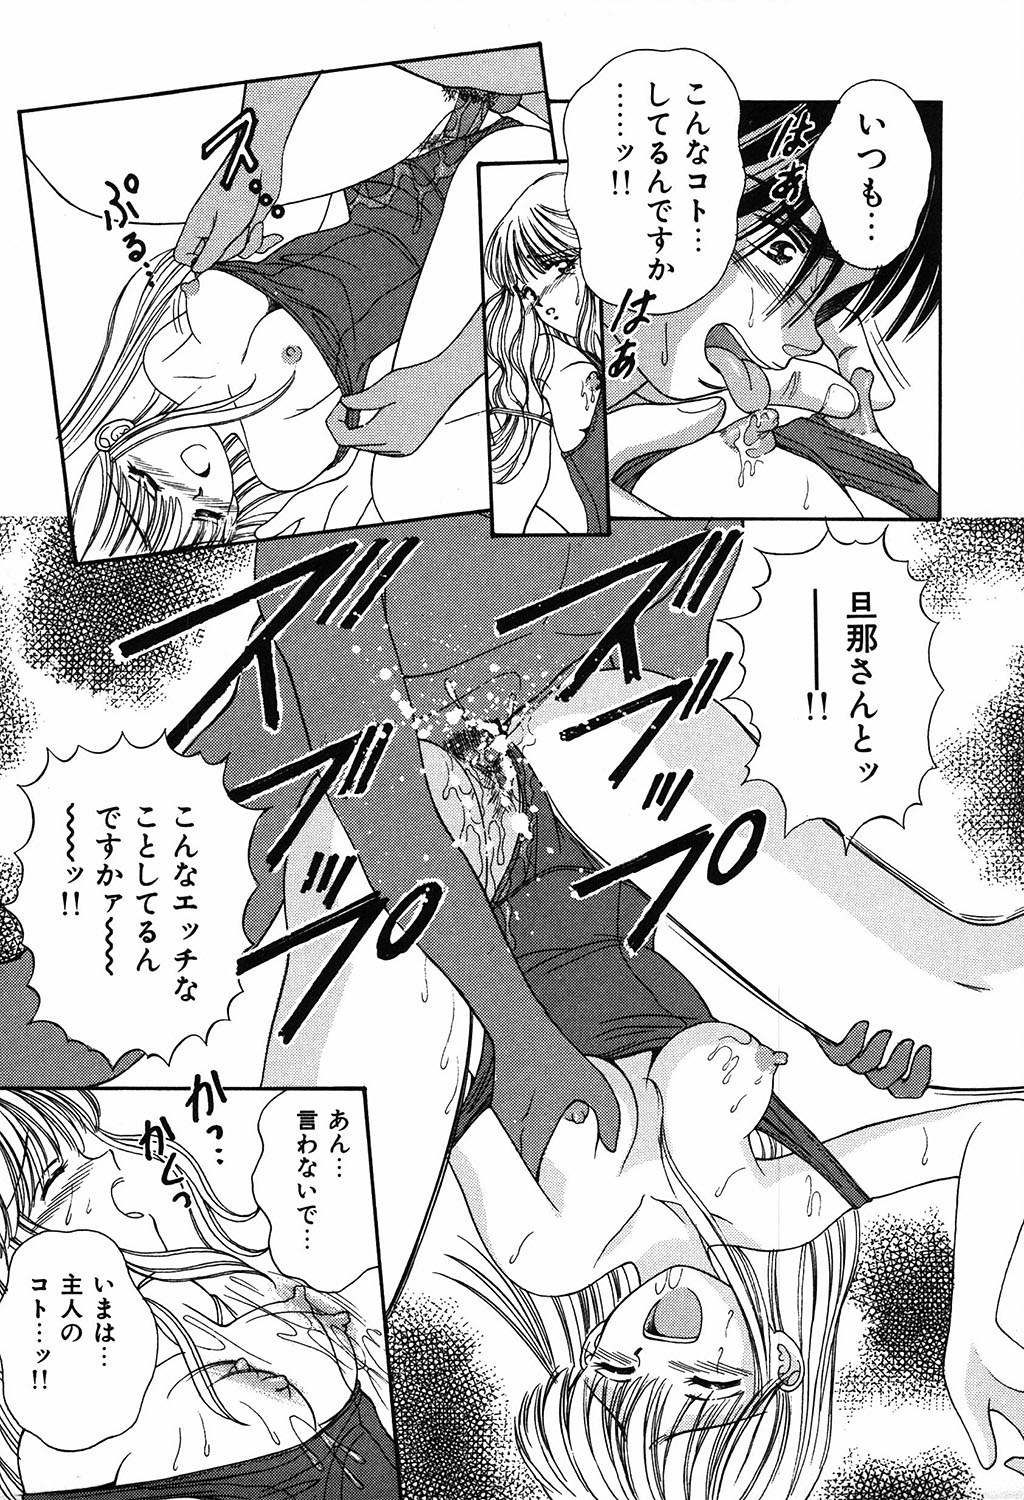 [Ayumi] Daisuki page 13 full